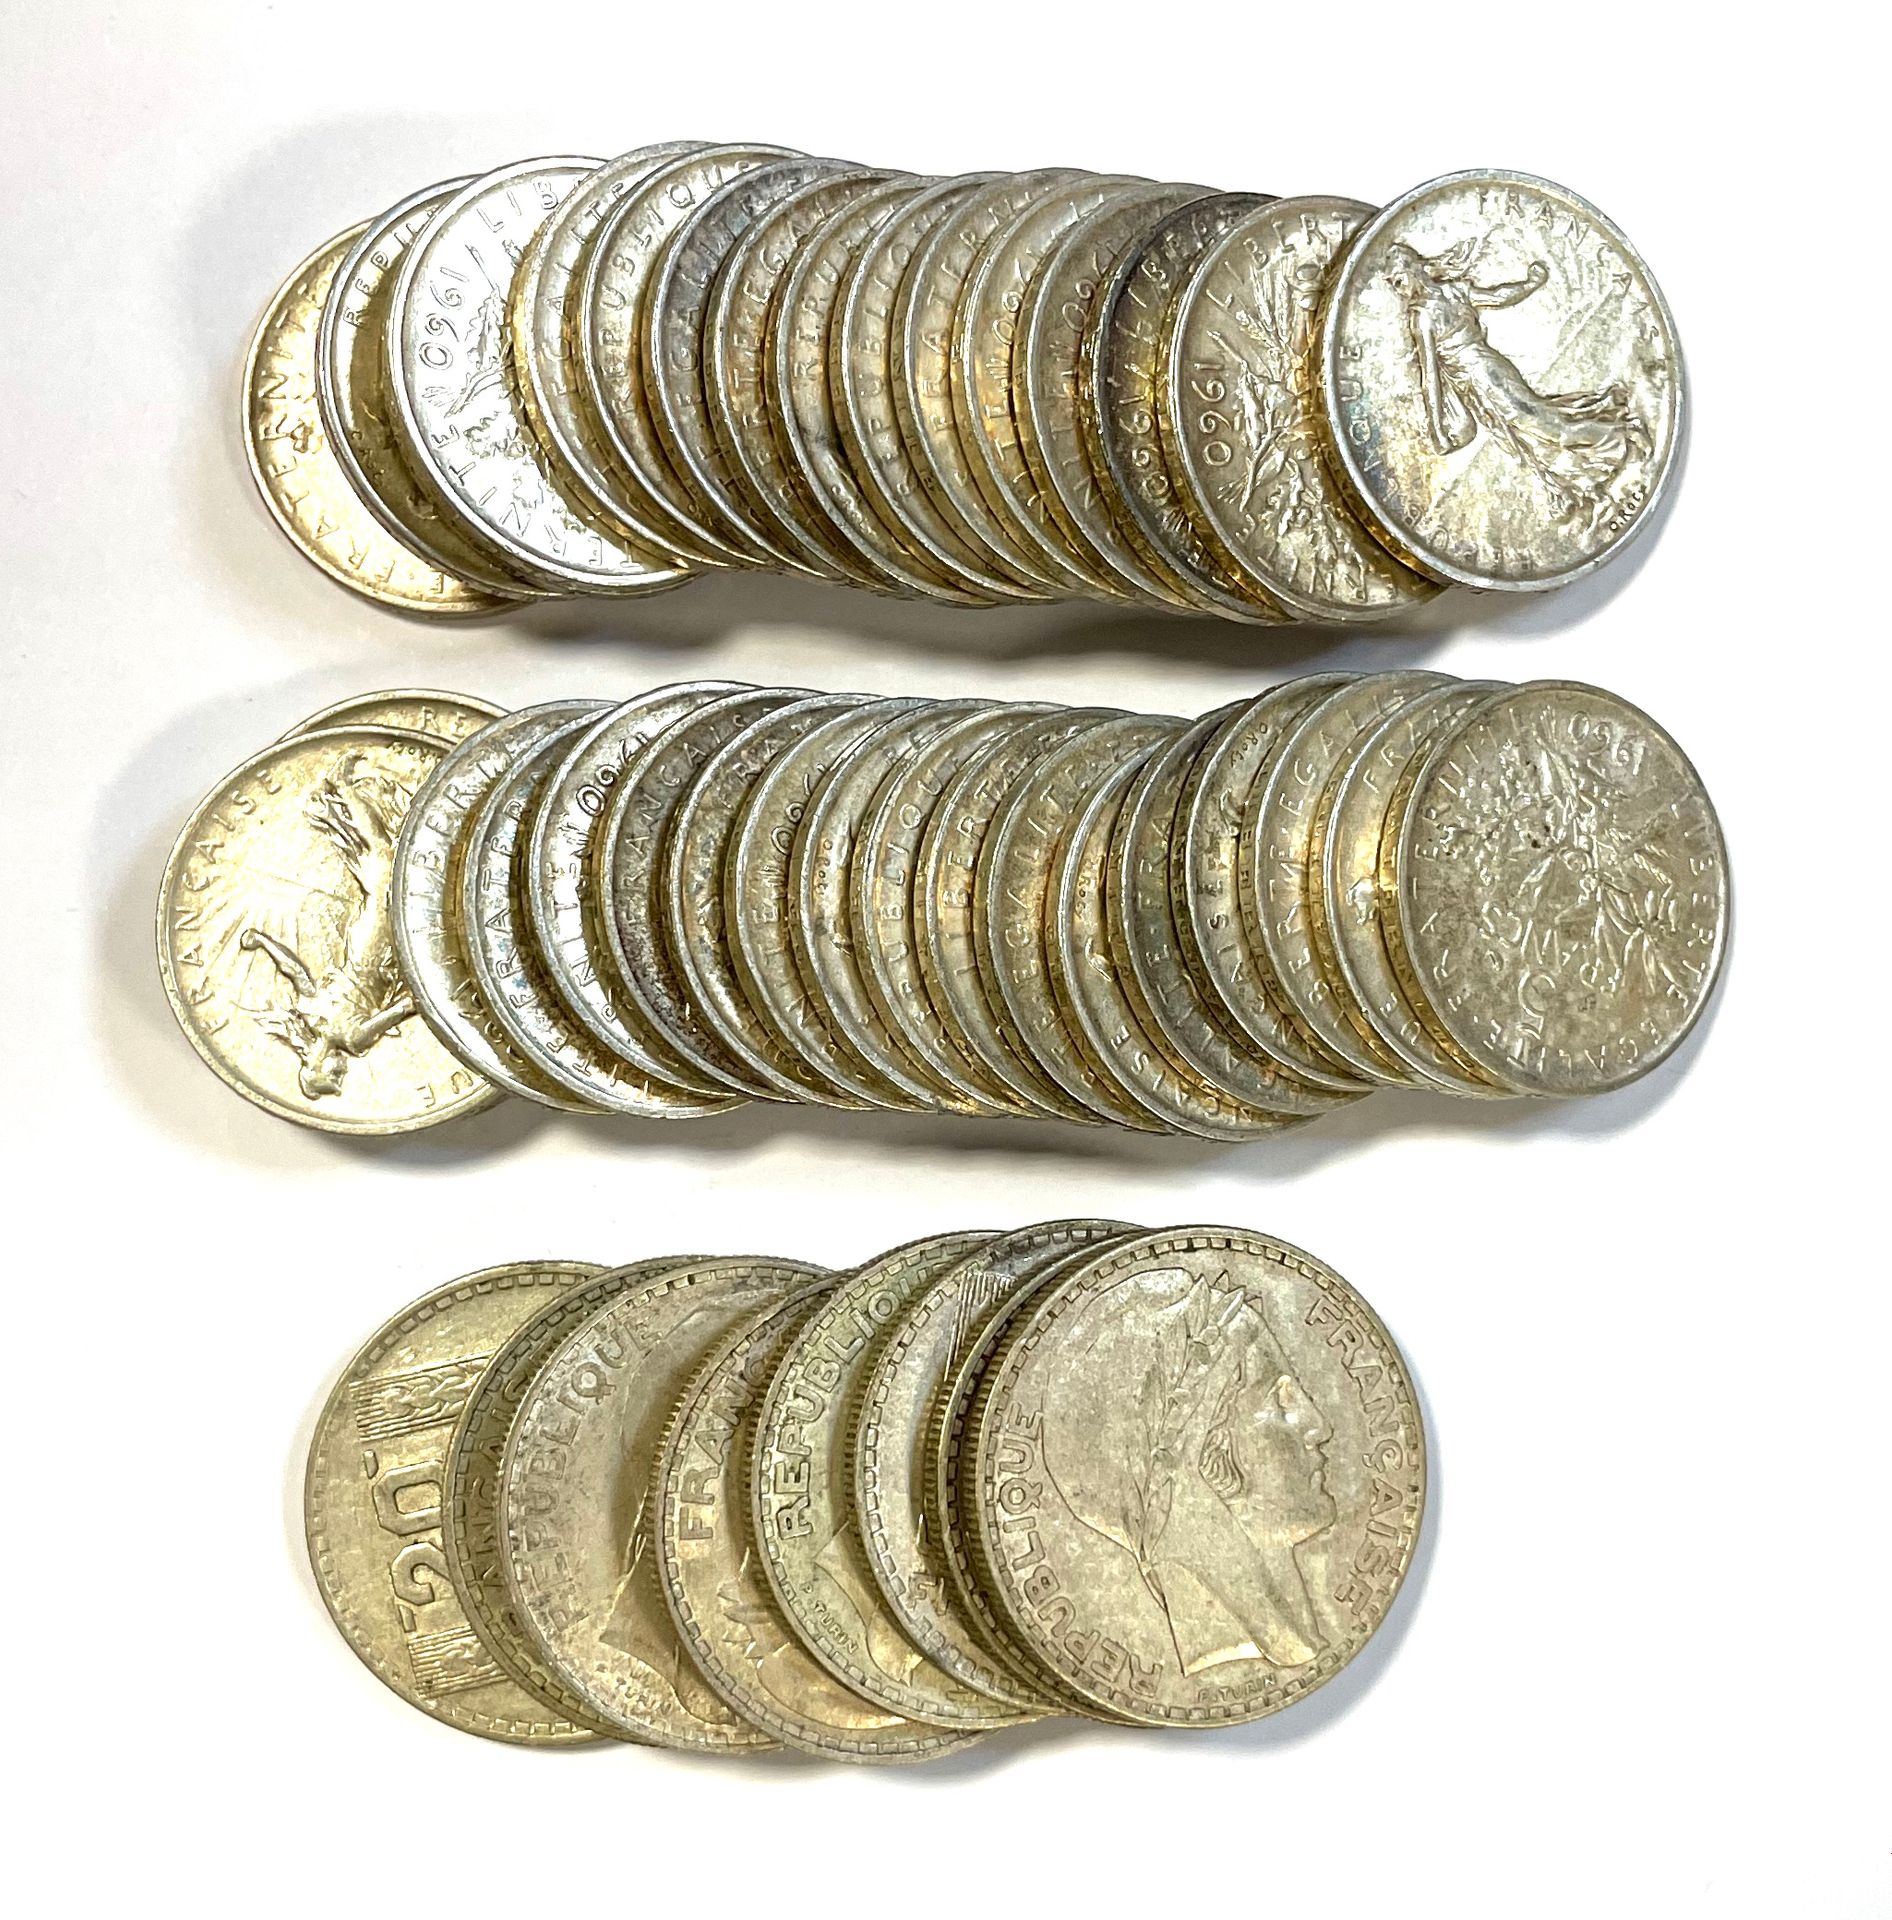 Null 法国 - 杂项

一批银币，包括35个5法郎Semeuse和8个20法郎Turin硬币

状态: 各种各样